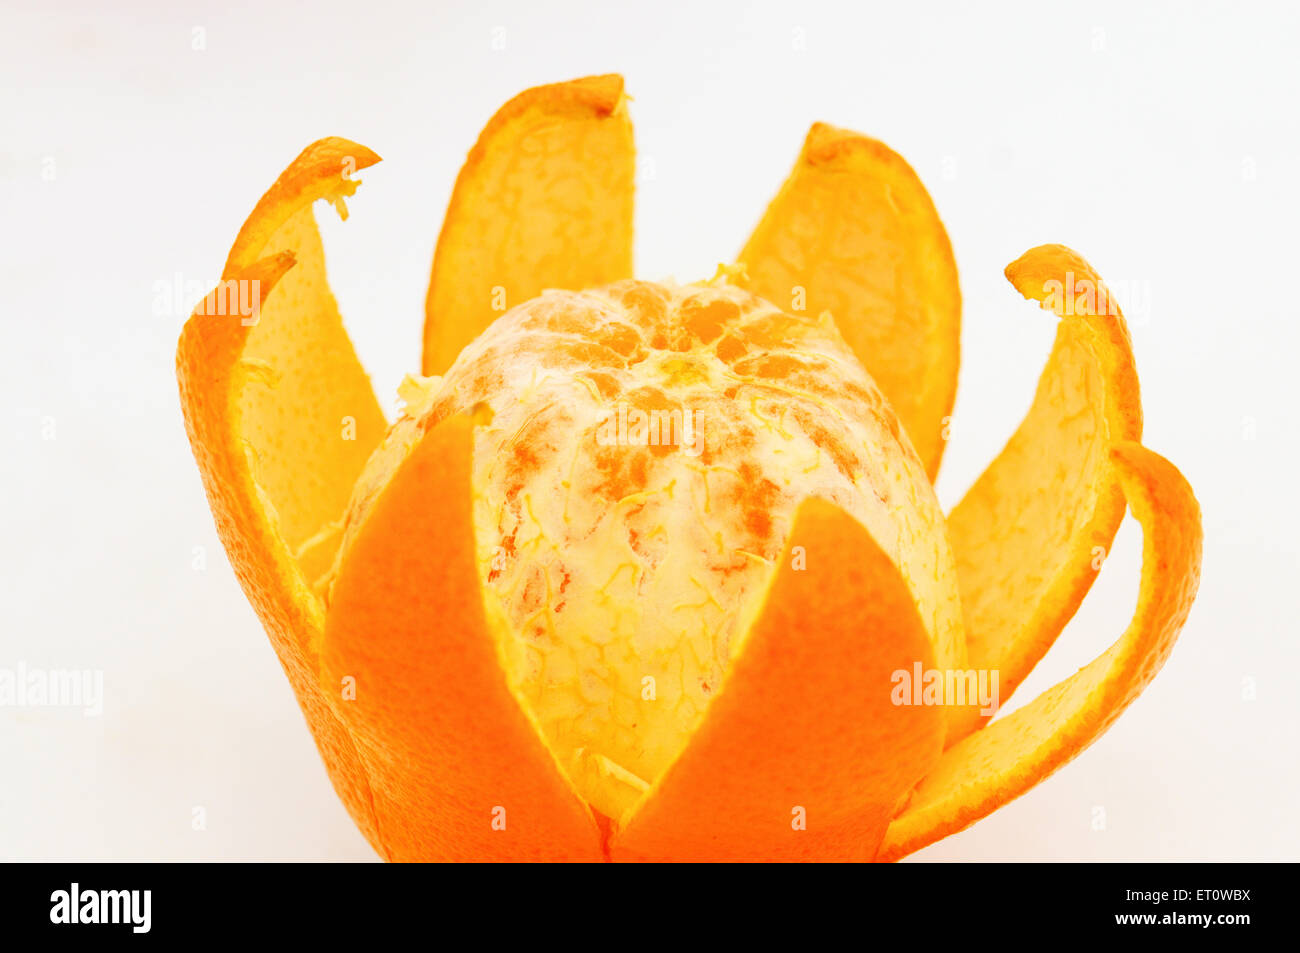 Orange fruit peeled on white background Stock Photo